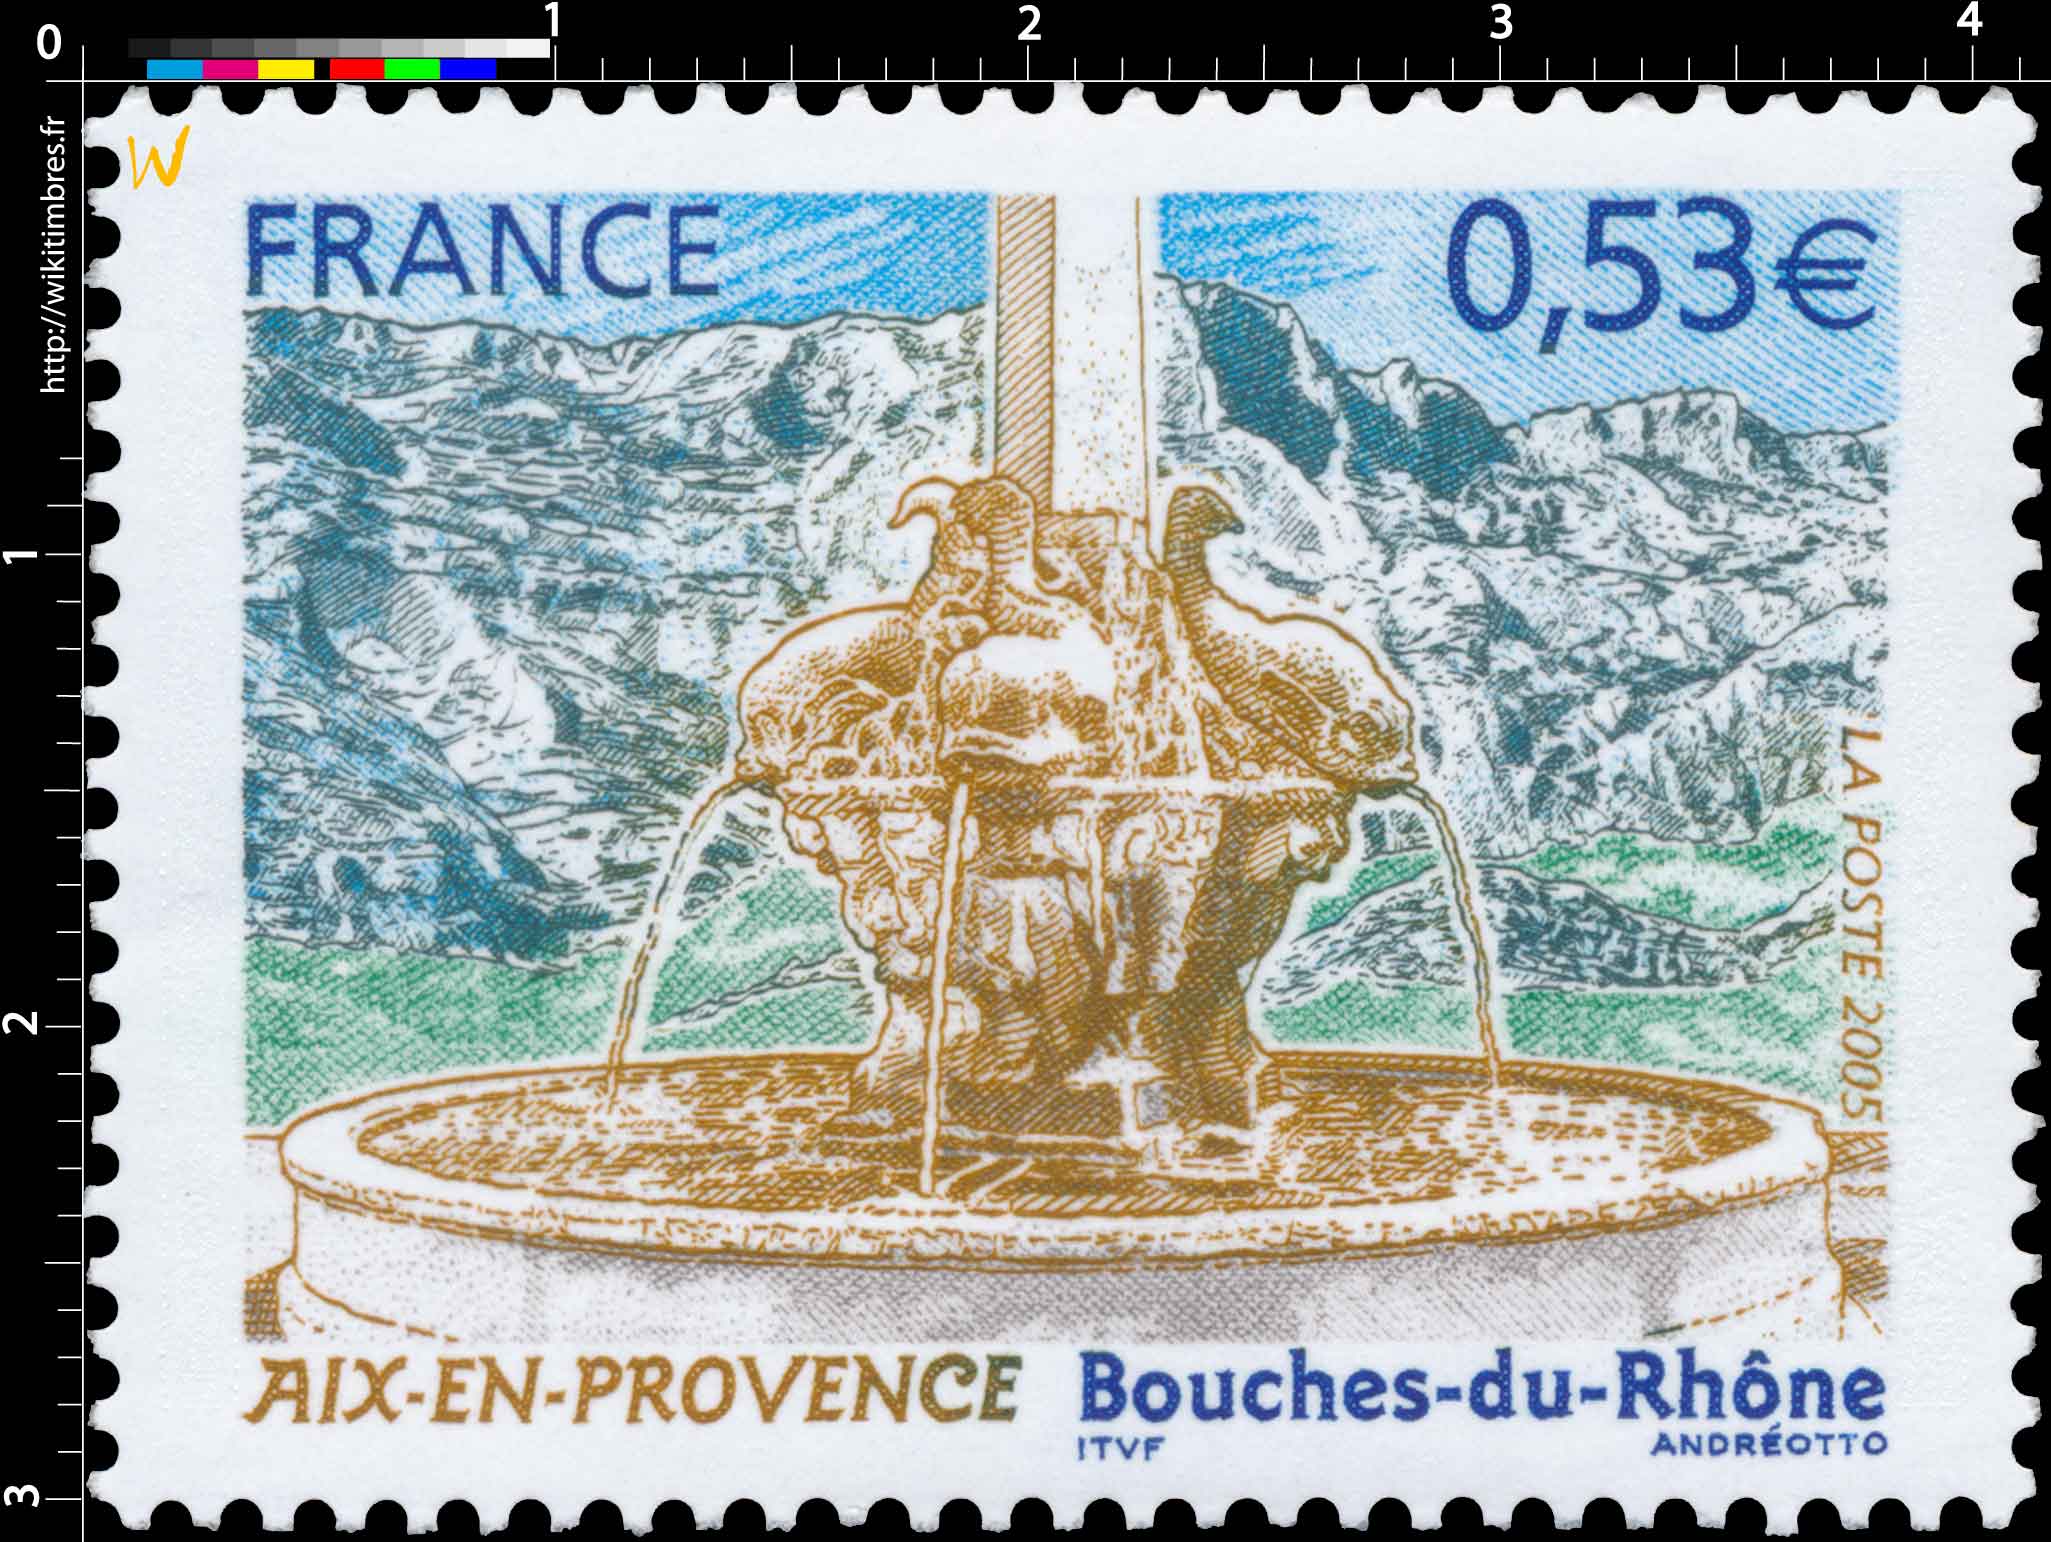 2005 AIX-EN-PROVENCE Bouches-du-Rhône